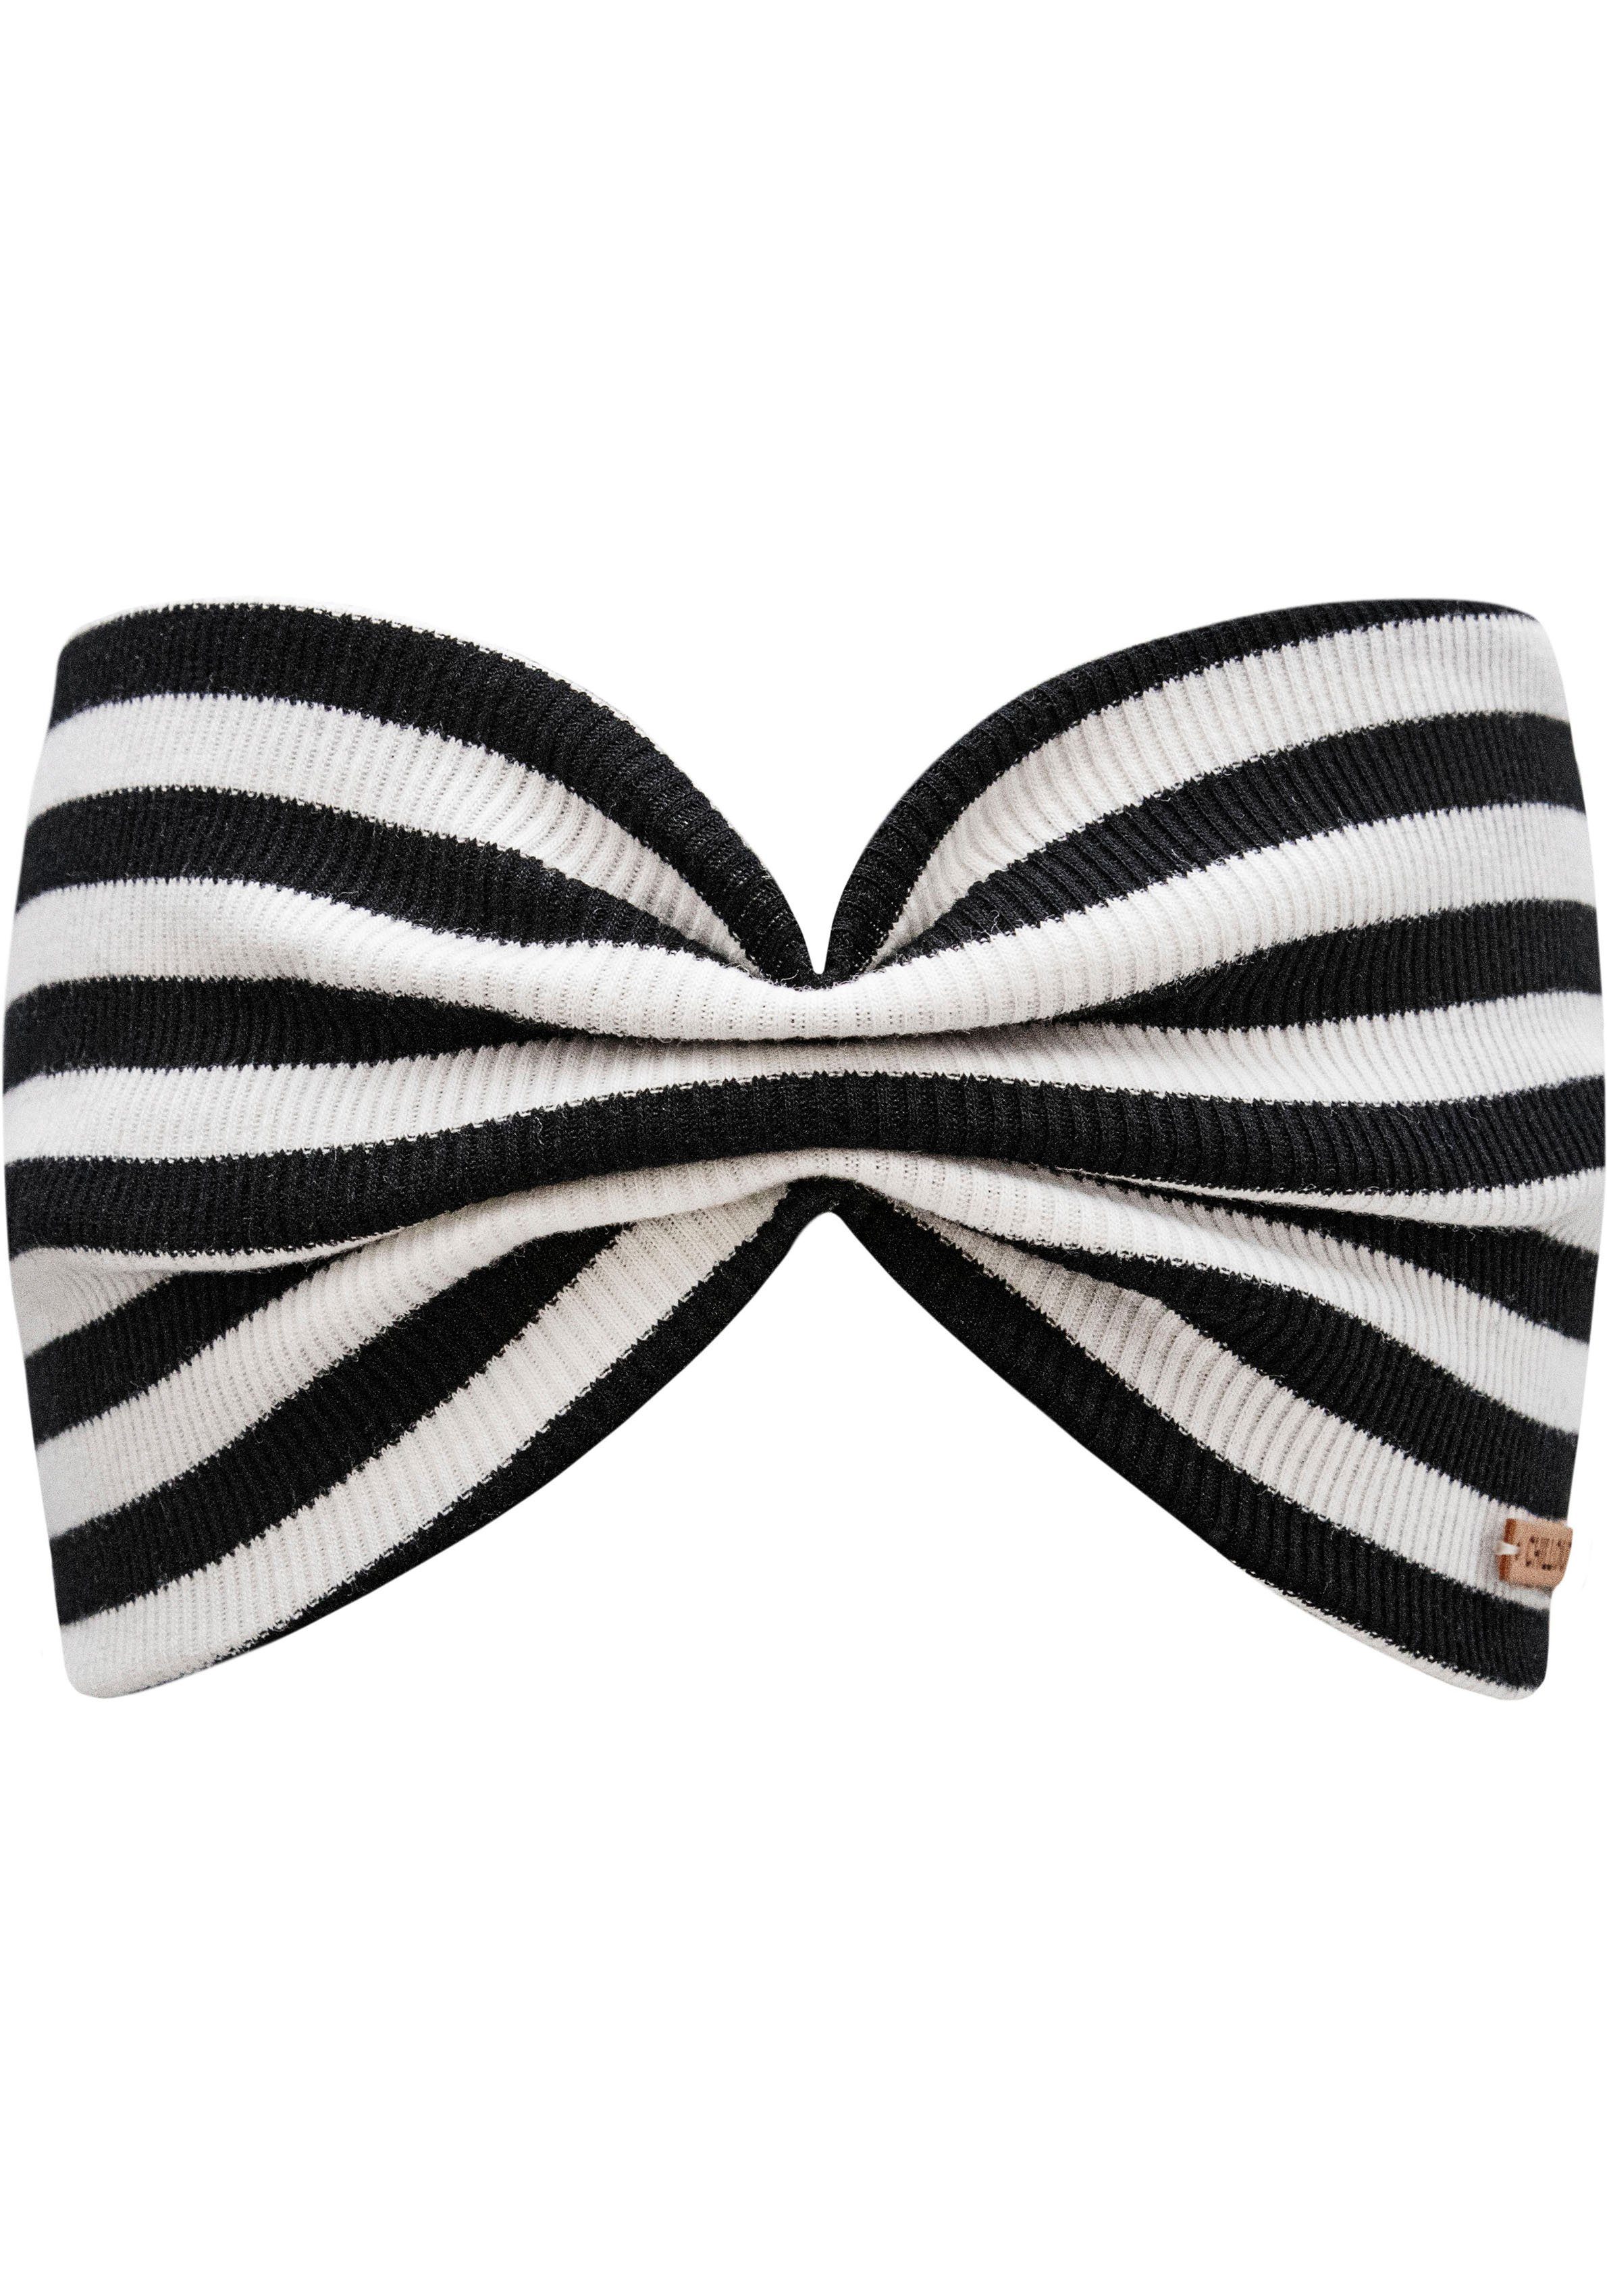 chillouts Stirnband Eilat Headband schwarz weiß